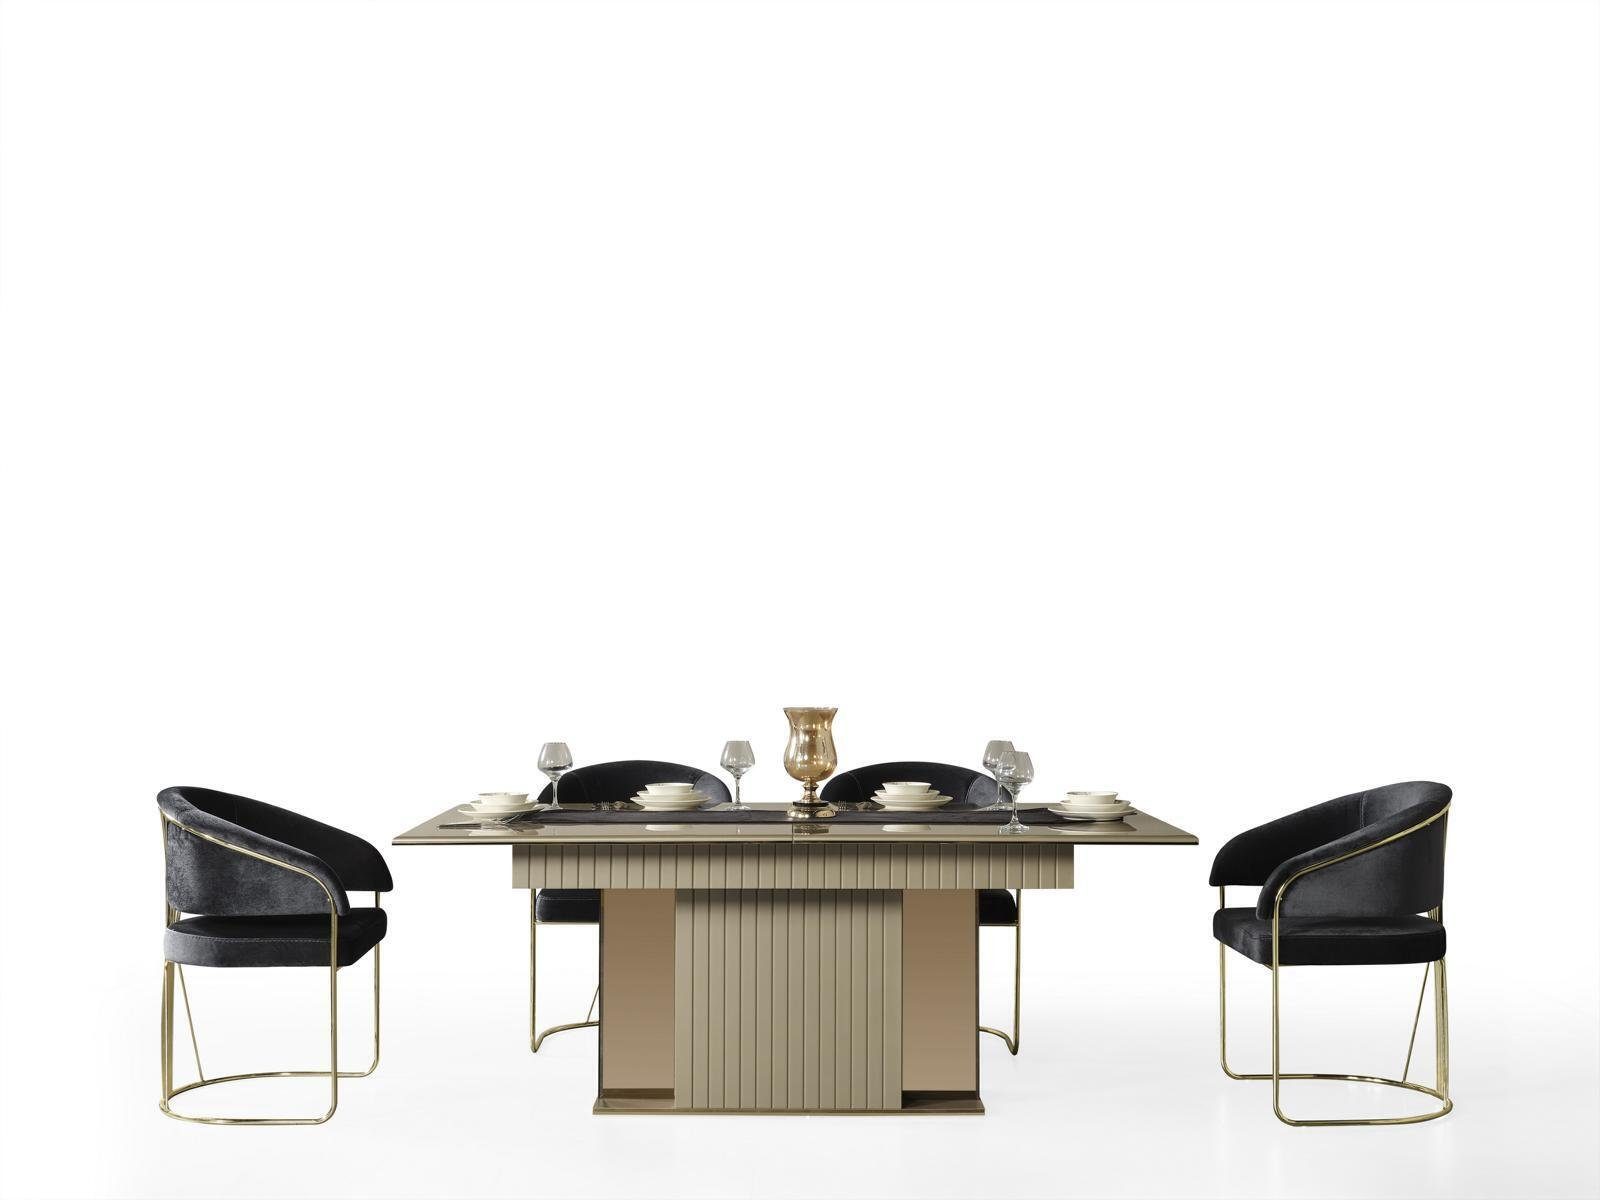 Preiswert JVmoebel Esstisch Luxus Esstische Tische Italienische, Tisch Esstisch Europa Metall in Design Made